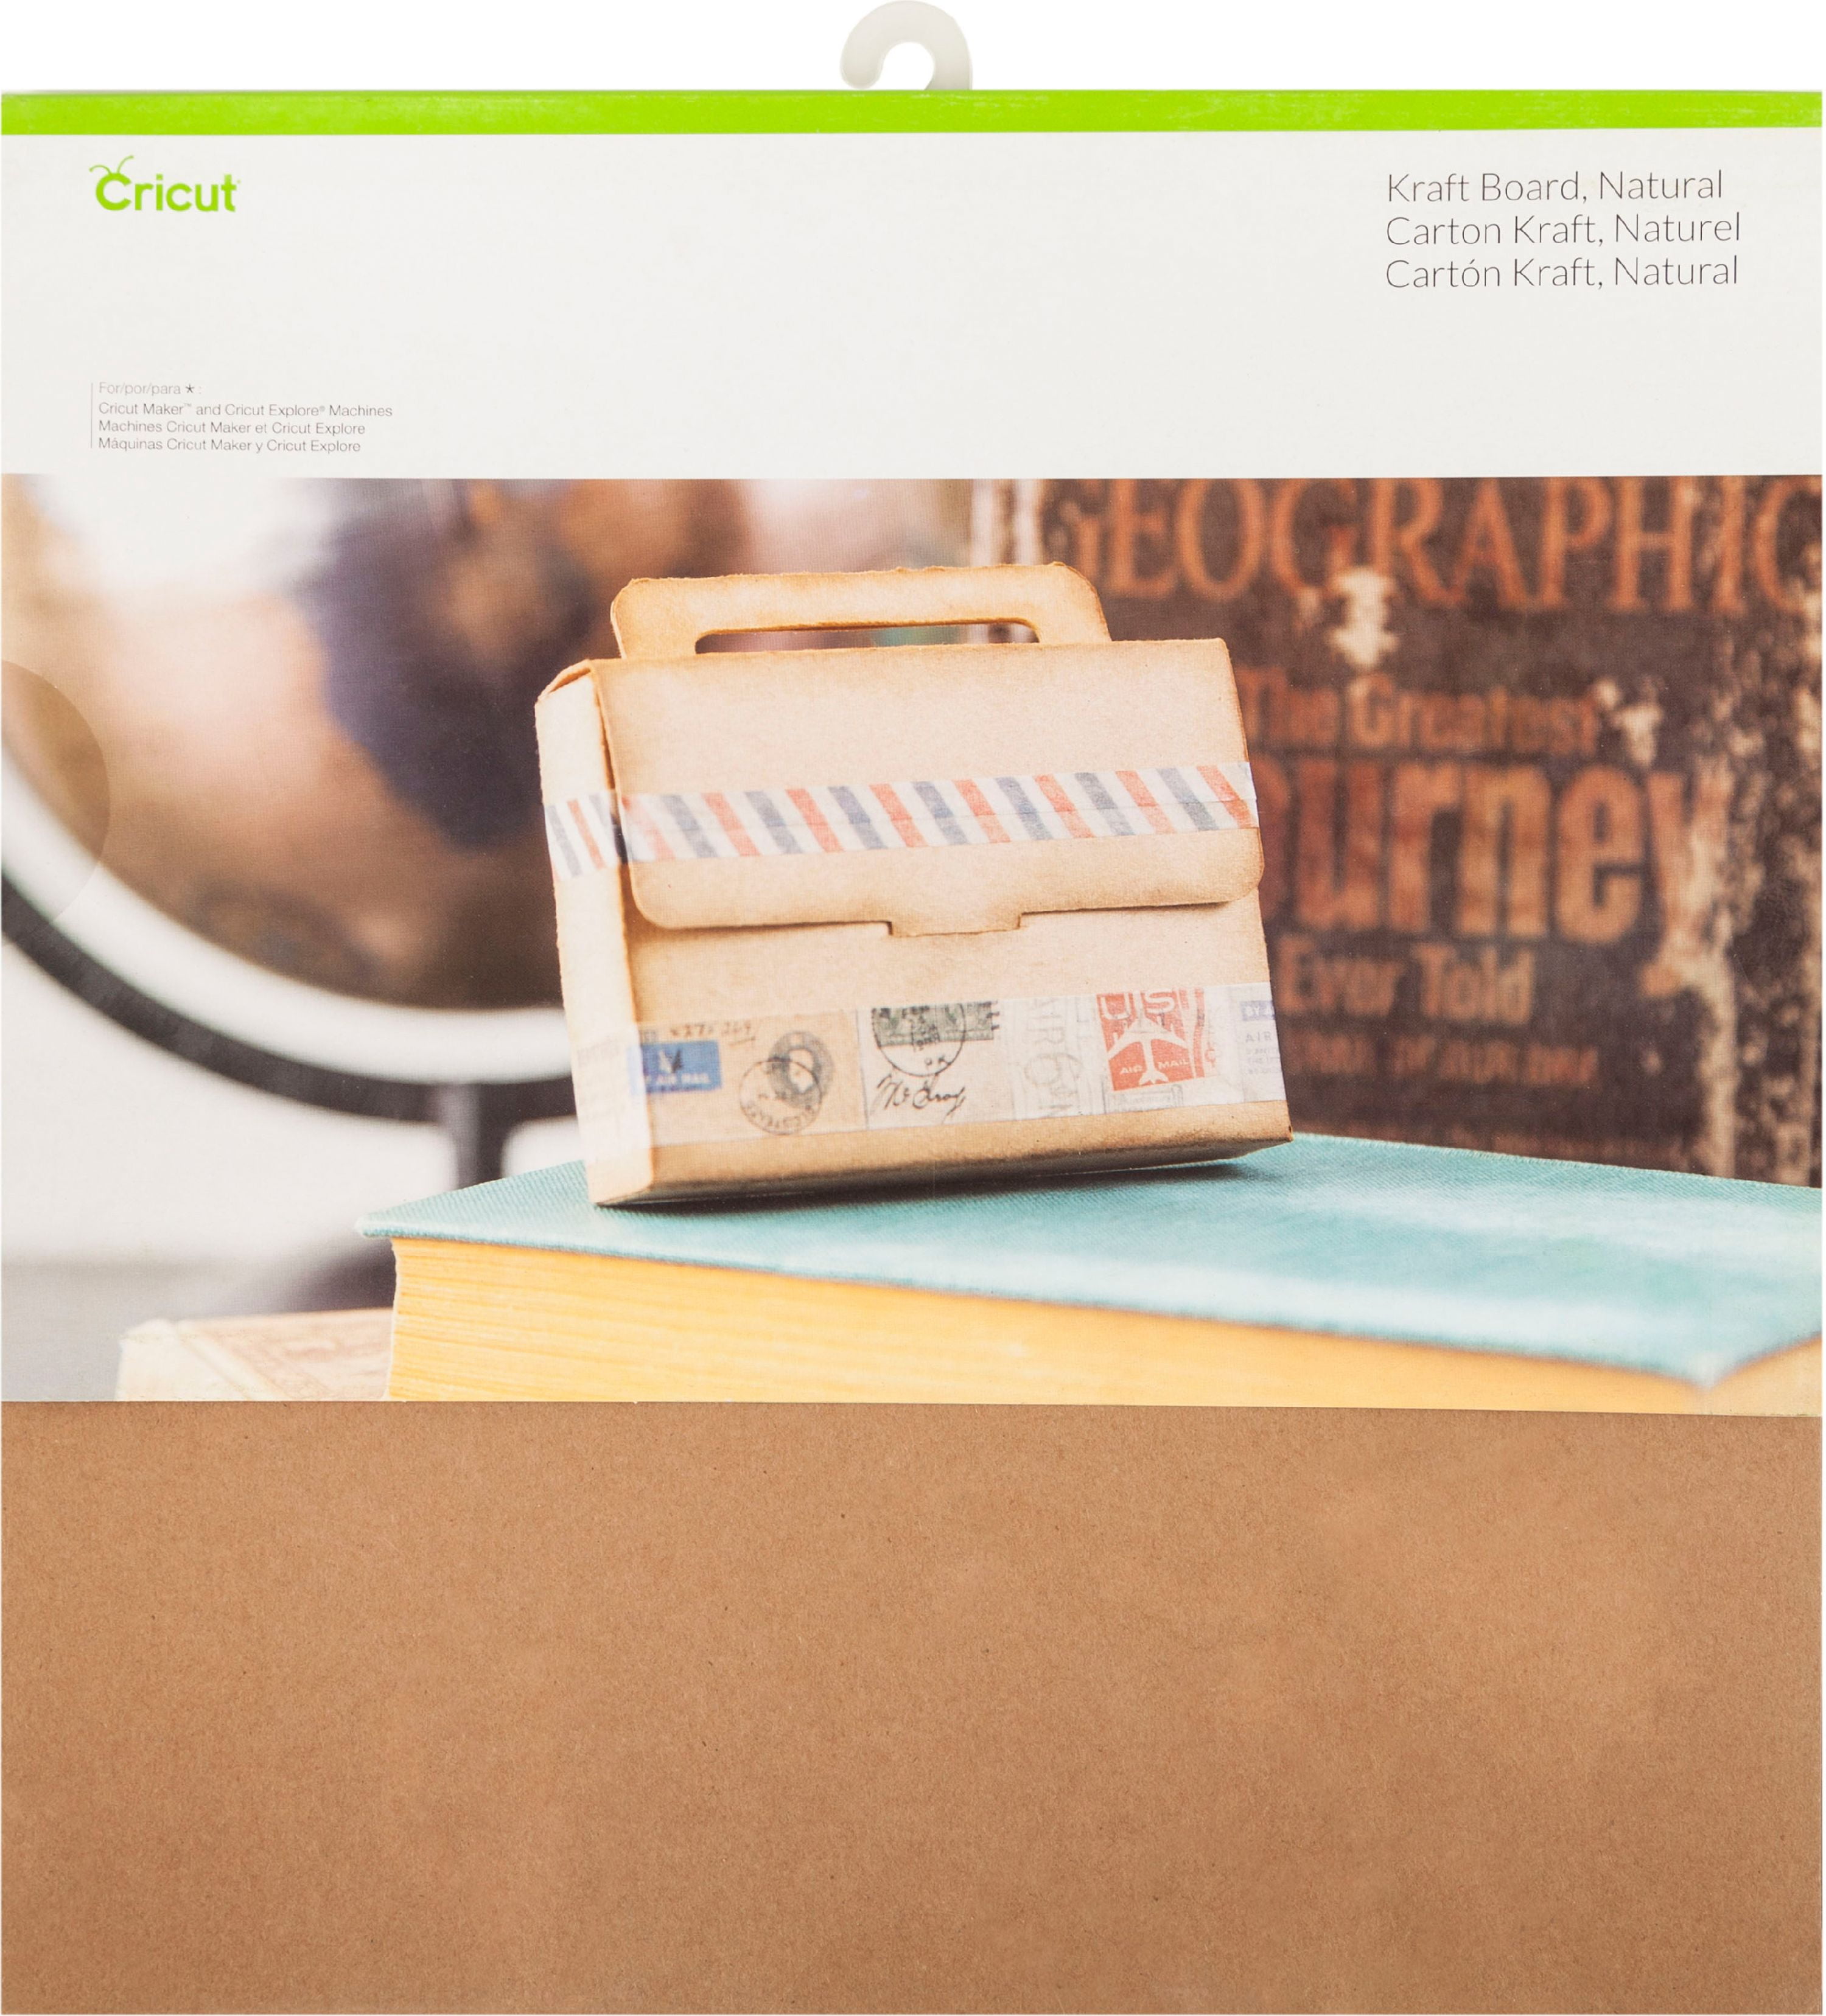 Cricut Joy Xtra Smart Label Paper Permanent (4 ct)